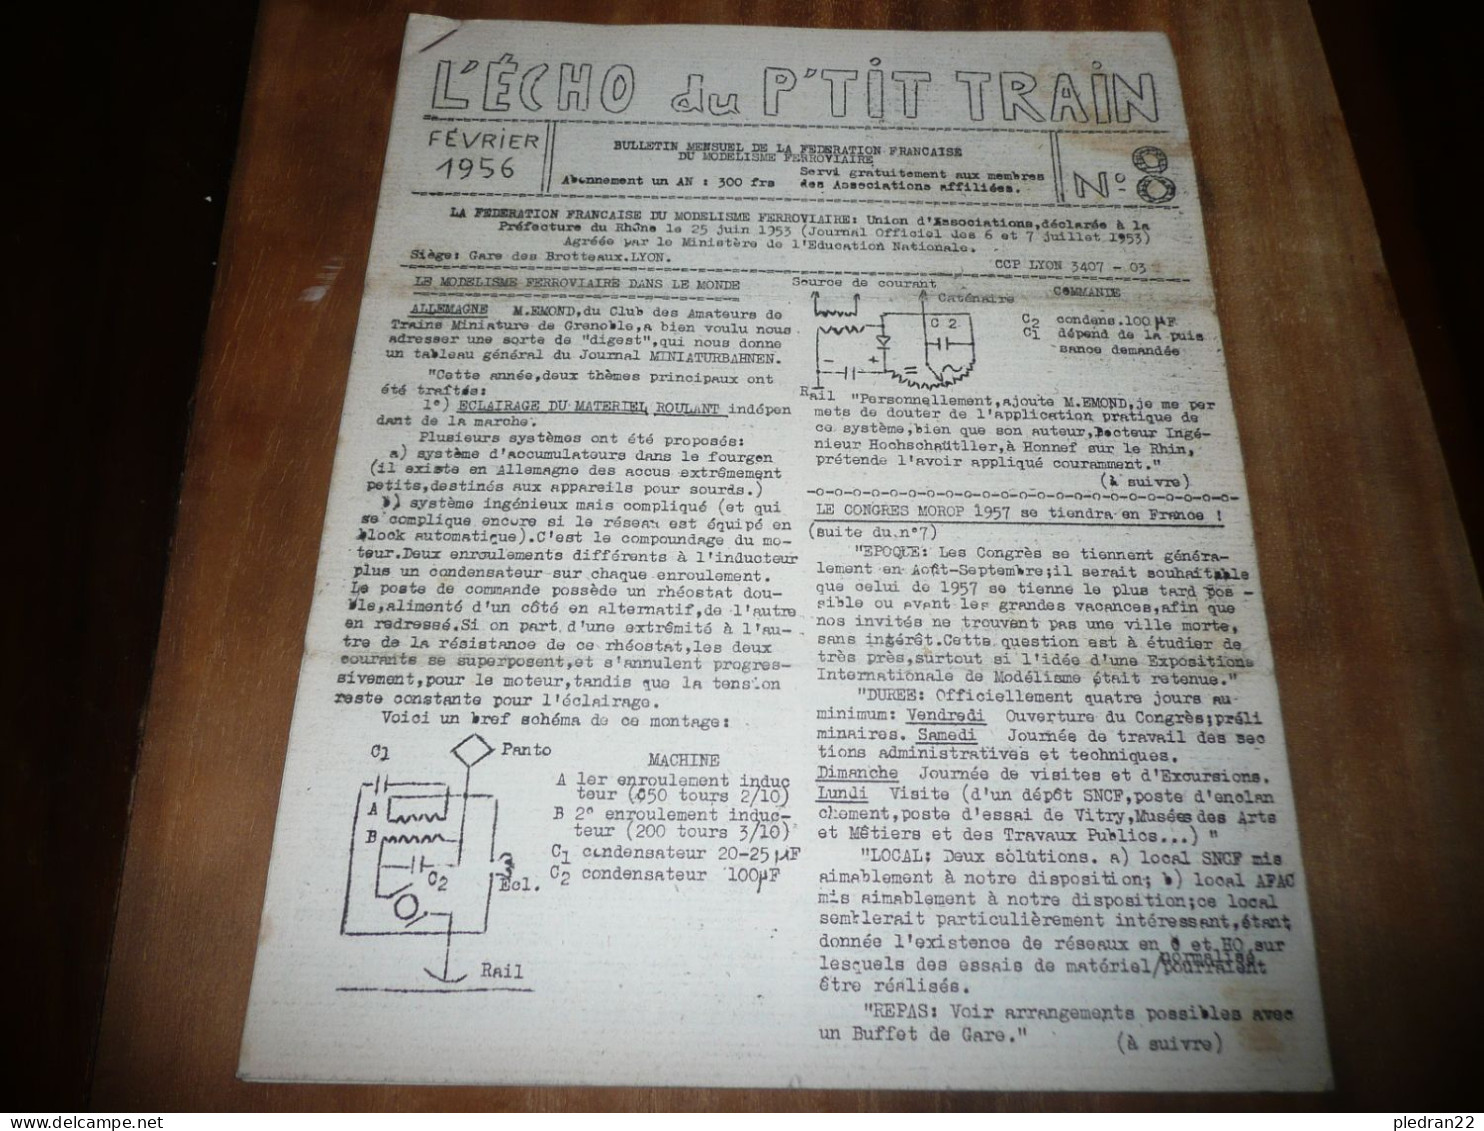 CHEMINS DE FER REVUE L'ECHO DU P'TIT TRAIN N° 8 FEVRIER 1956 MODELISME FERROVIAIRE GARE DES BROTTEAUX LYON - Ferrovie & Tranvie